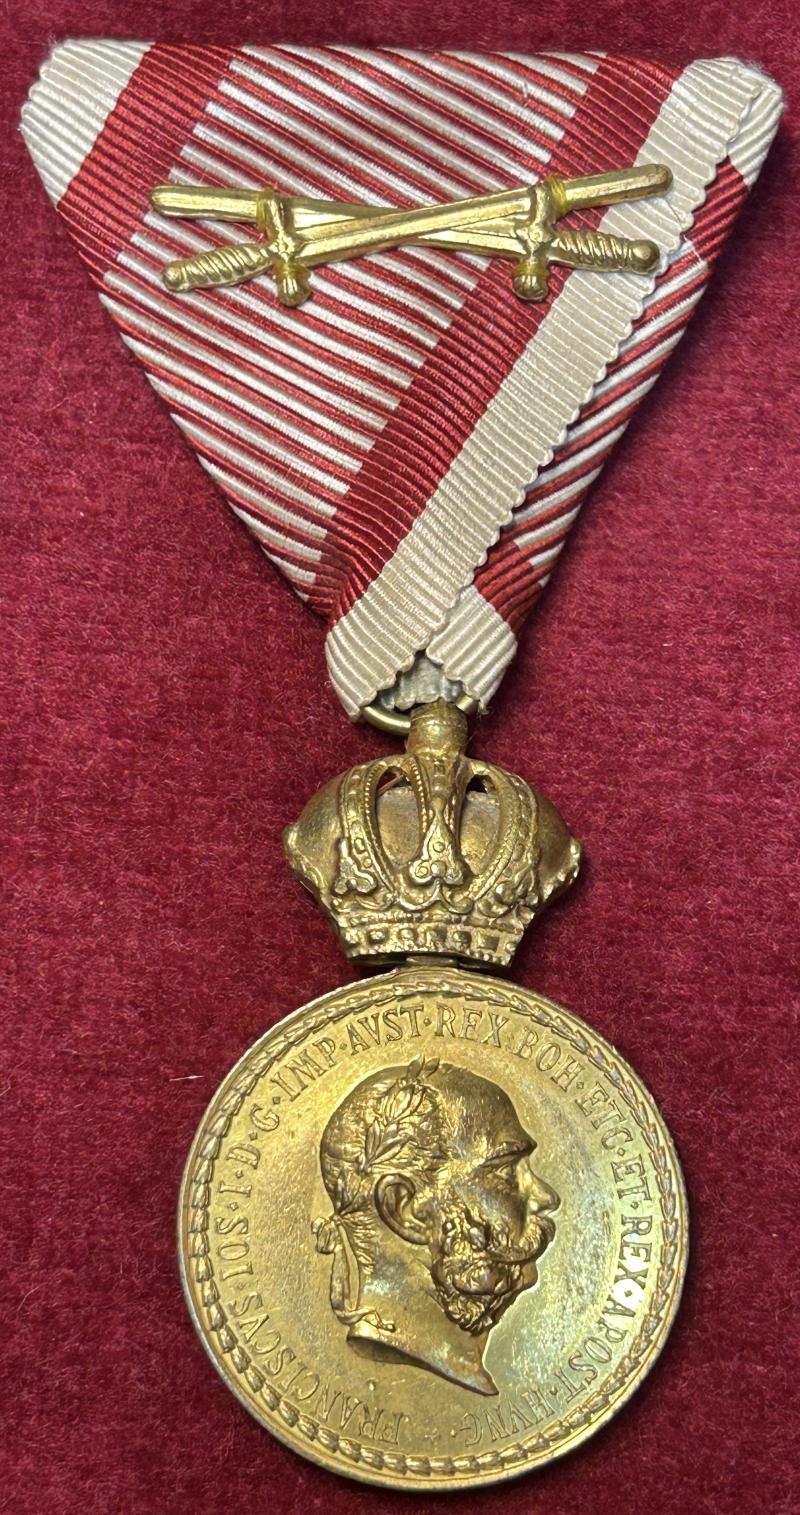 Österreich-Ungarn Militär-Verdienstmedaille in Bronze mit auflage